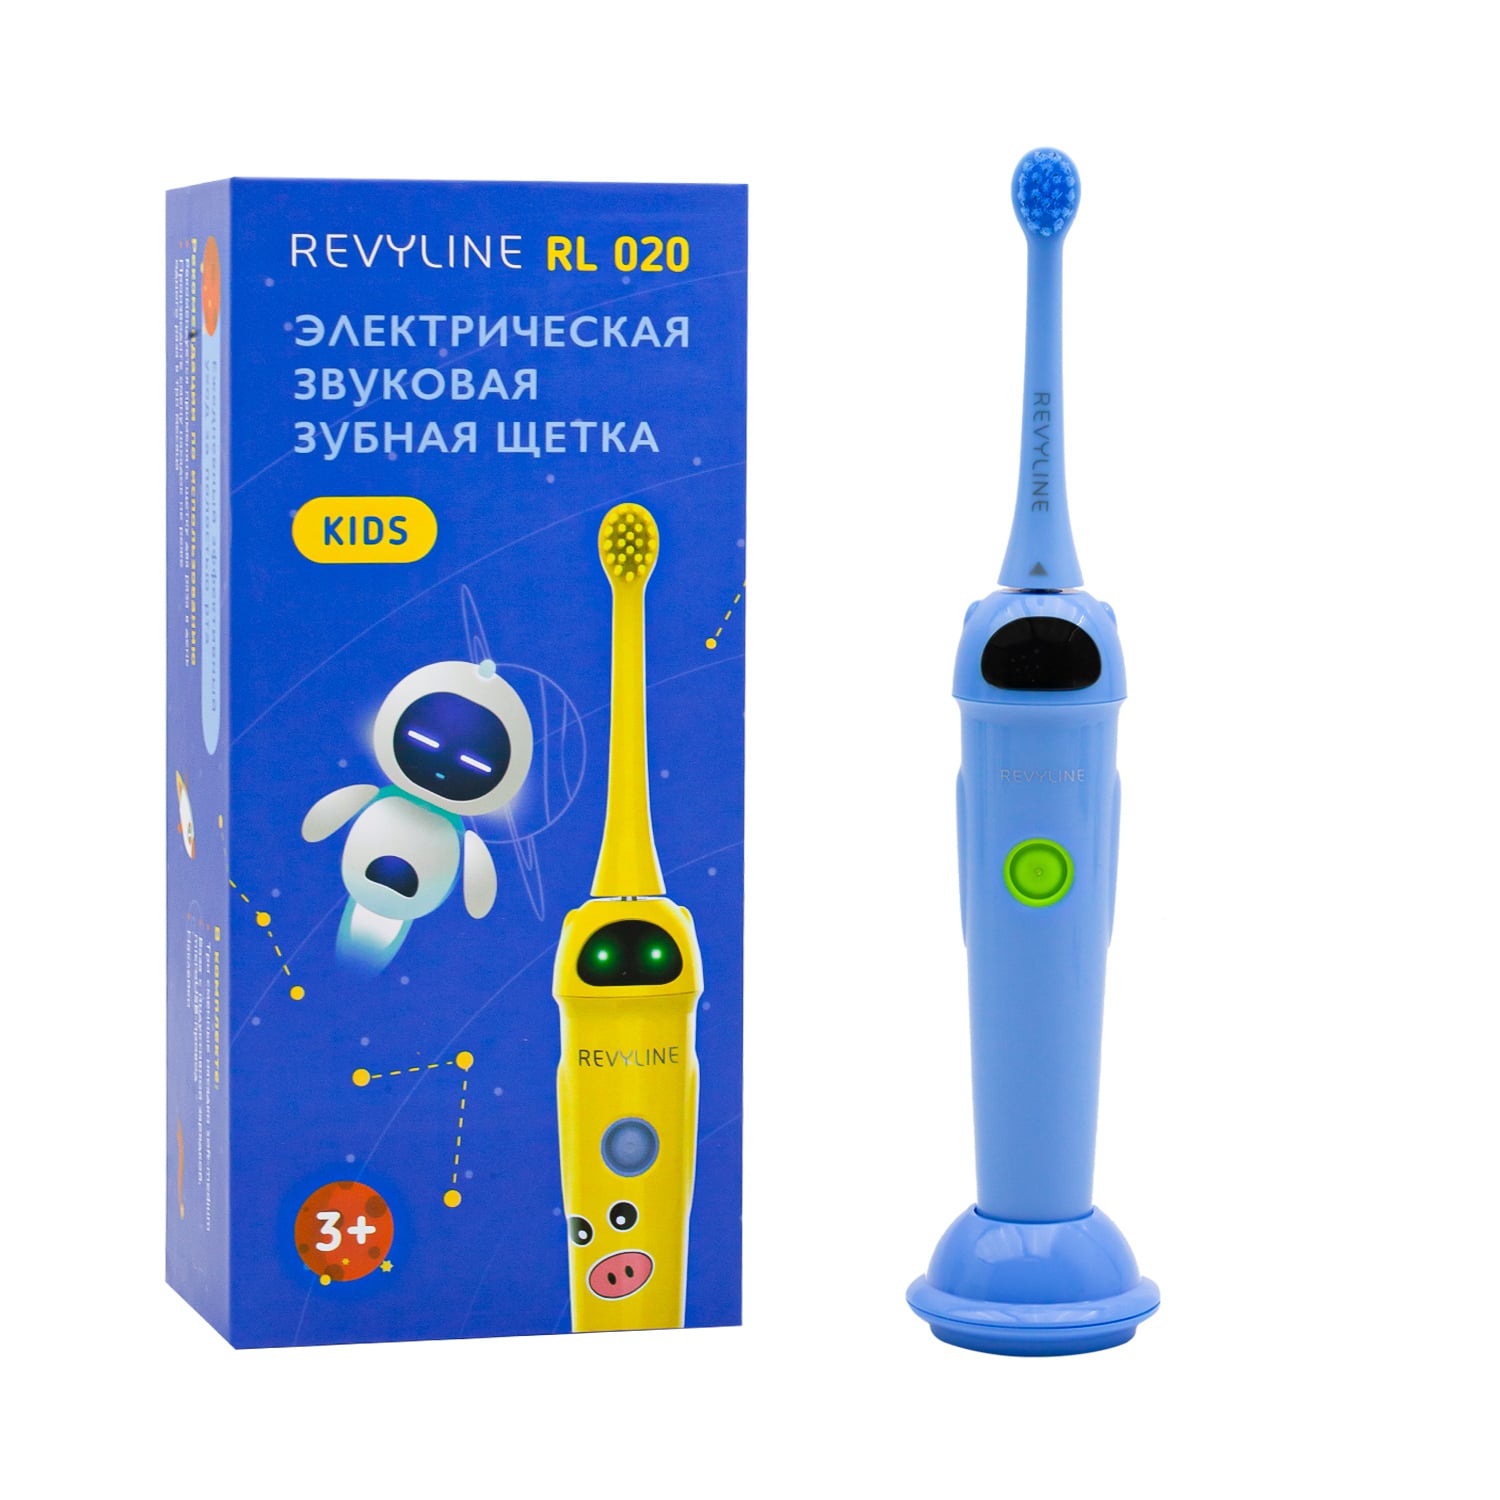 REVYLINE Детская электрическая звуковая зубная щетка RL 020 3+, синяя, 1 шт (REVYLINE, Электрические зубные щетки)